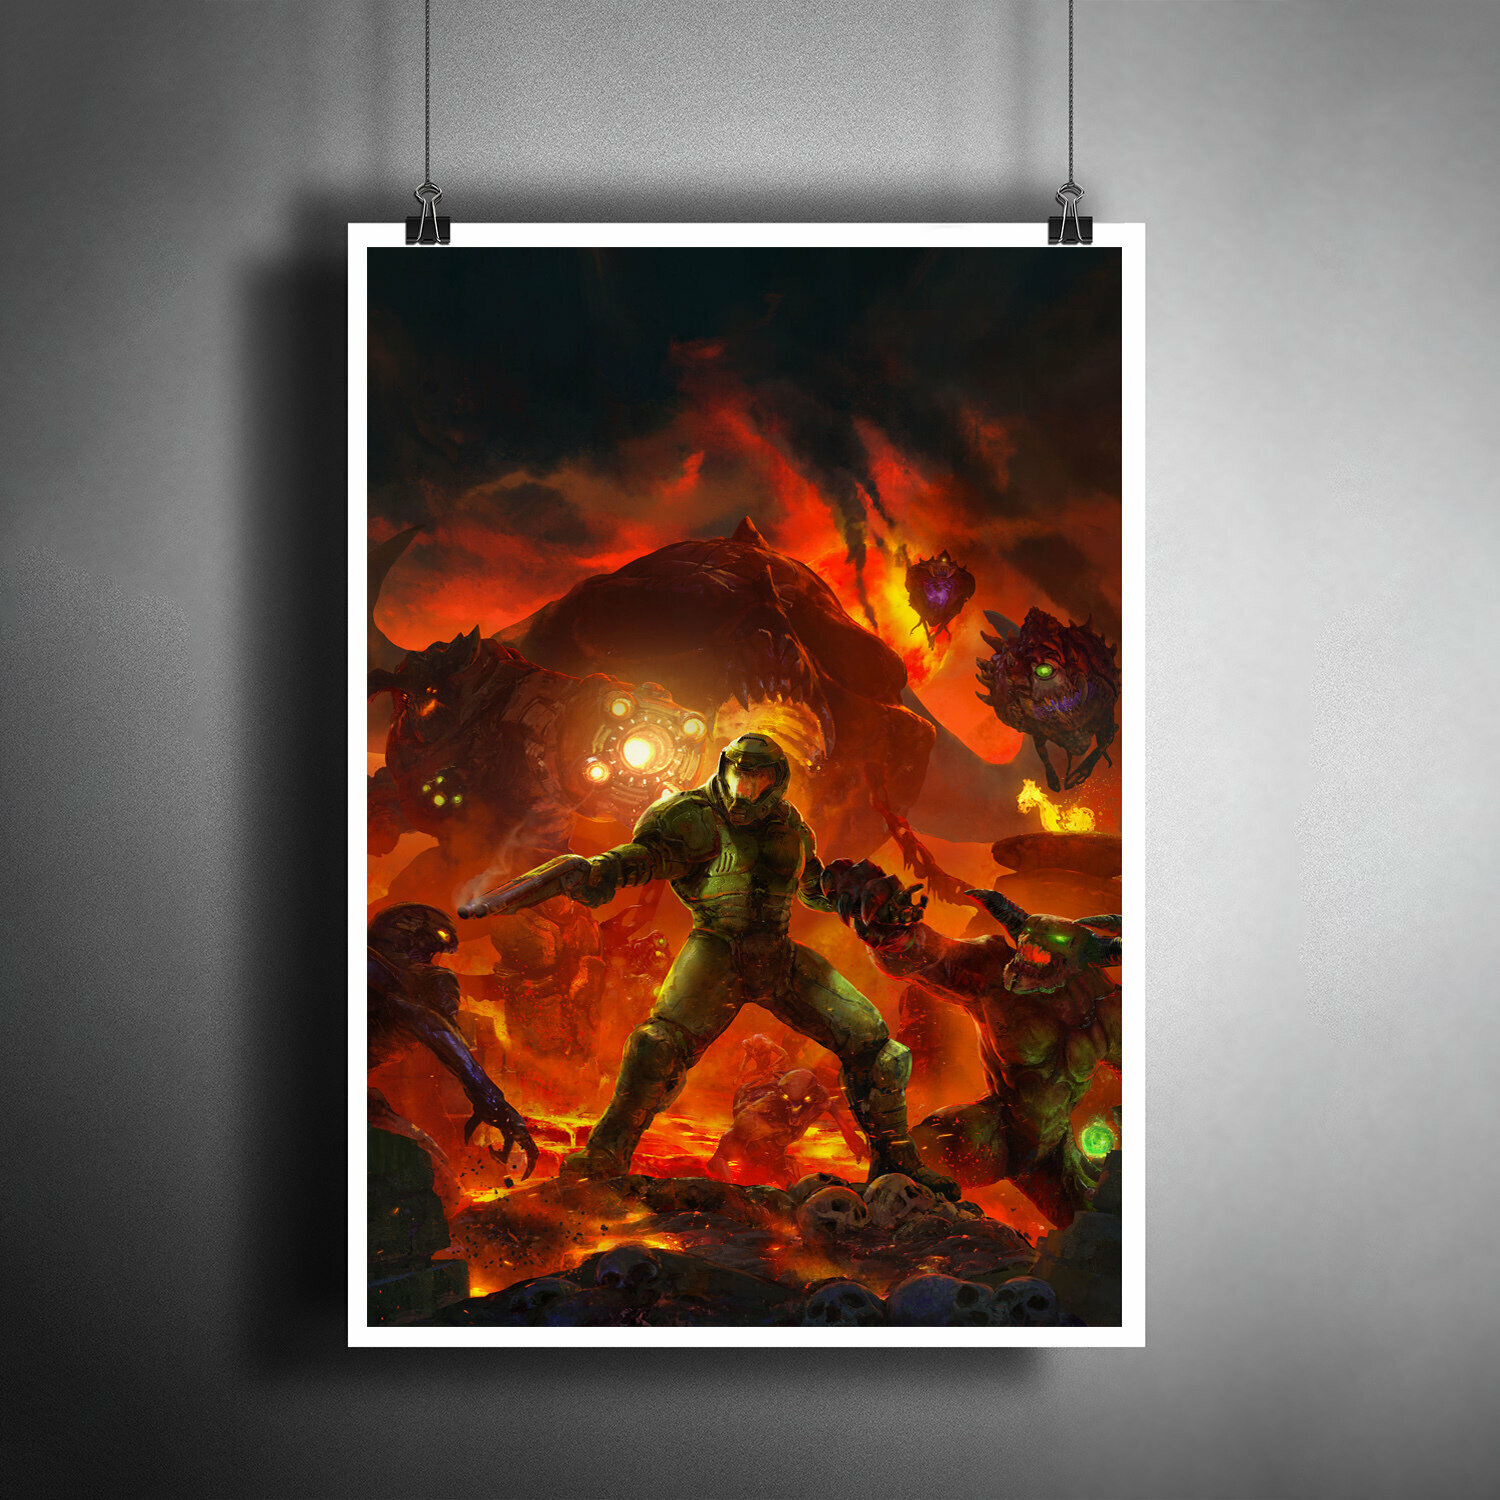 Постер плакат для интерьера "Компьютерная игра Doom. Игра Дум" / Декор дома, офиса, комнаты, квартиры A3 (297 x 420 мм)